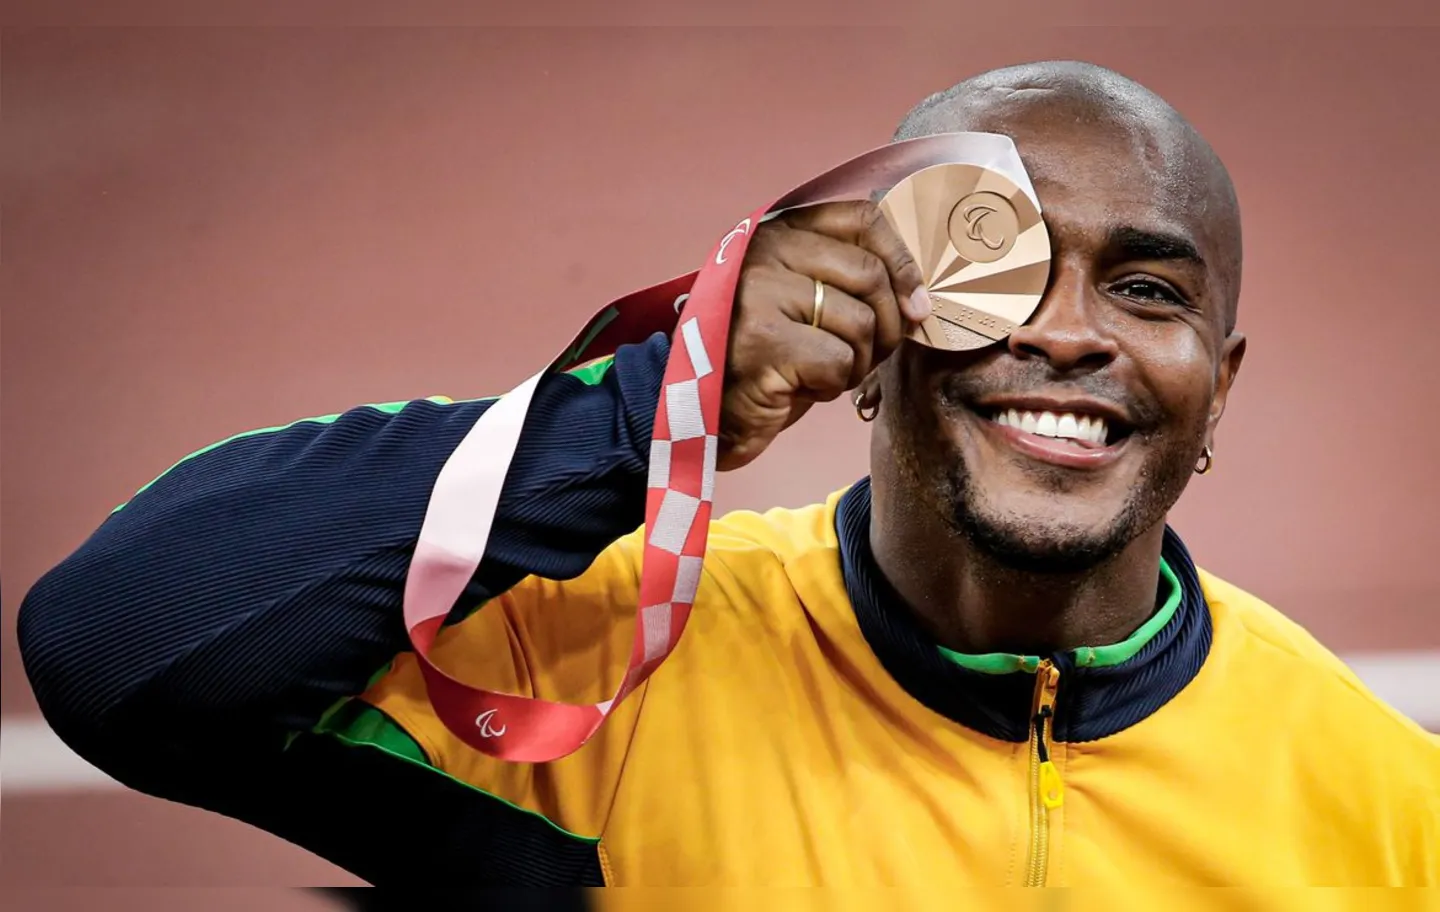 O carioca já havia alcançado medalha no lançamento de peso | Foto: Wander Roberto | CPB | Direitos Reservados